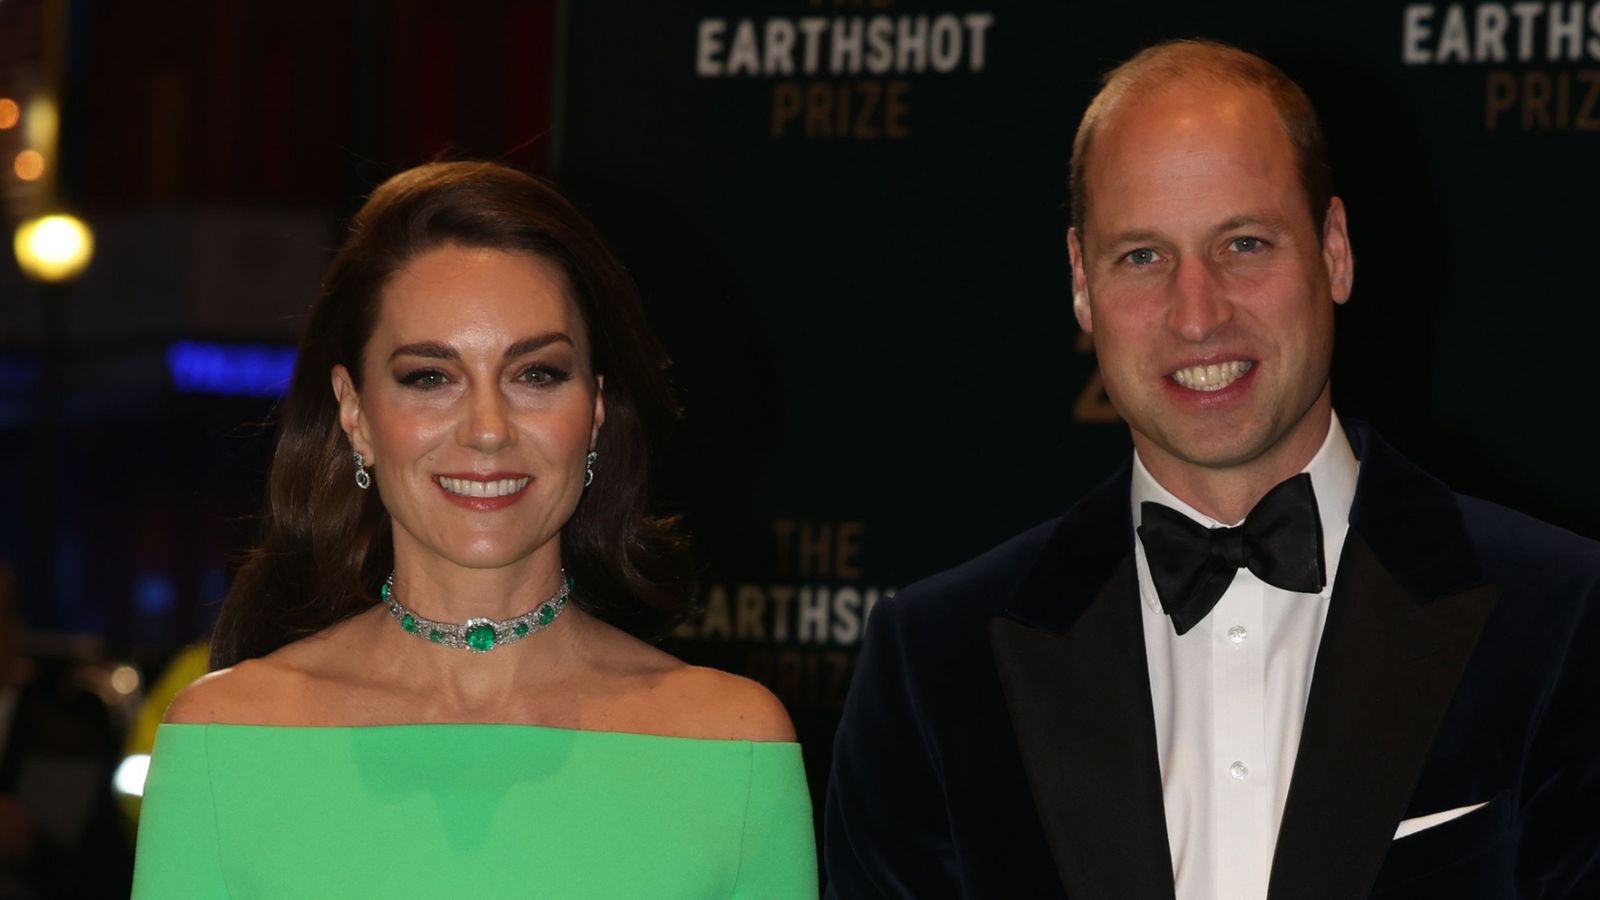 Le prince William se qualifie d ‘«optimiste têtu» avant que lui et Kate n’arrivent à la cérémonie de remise du prix Earthshot |  Nouvelles du Royaume-Uni